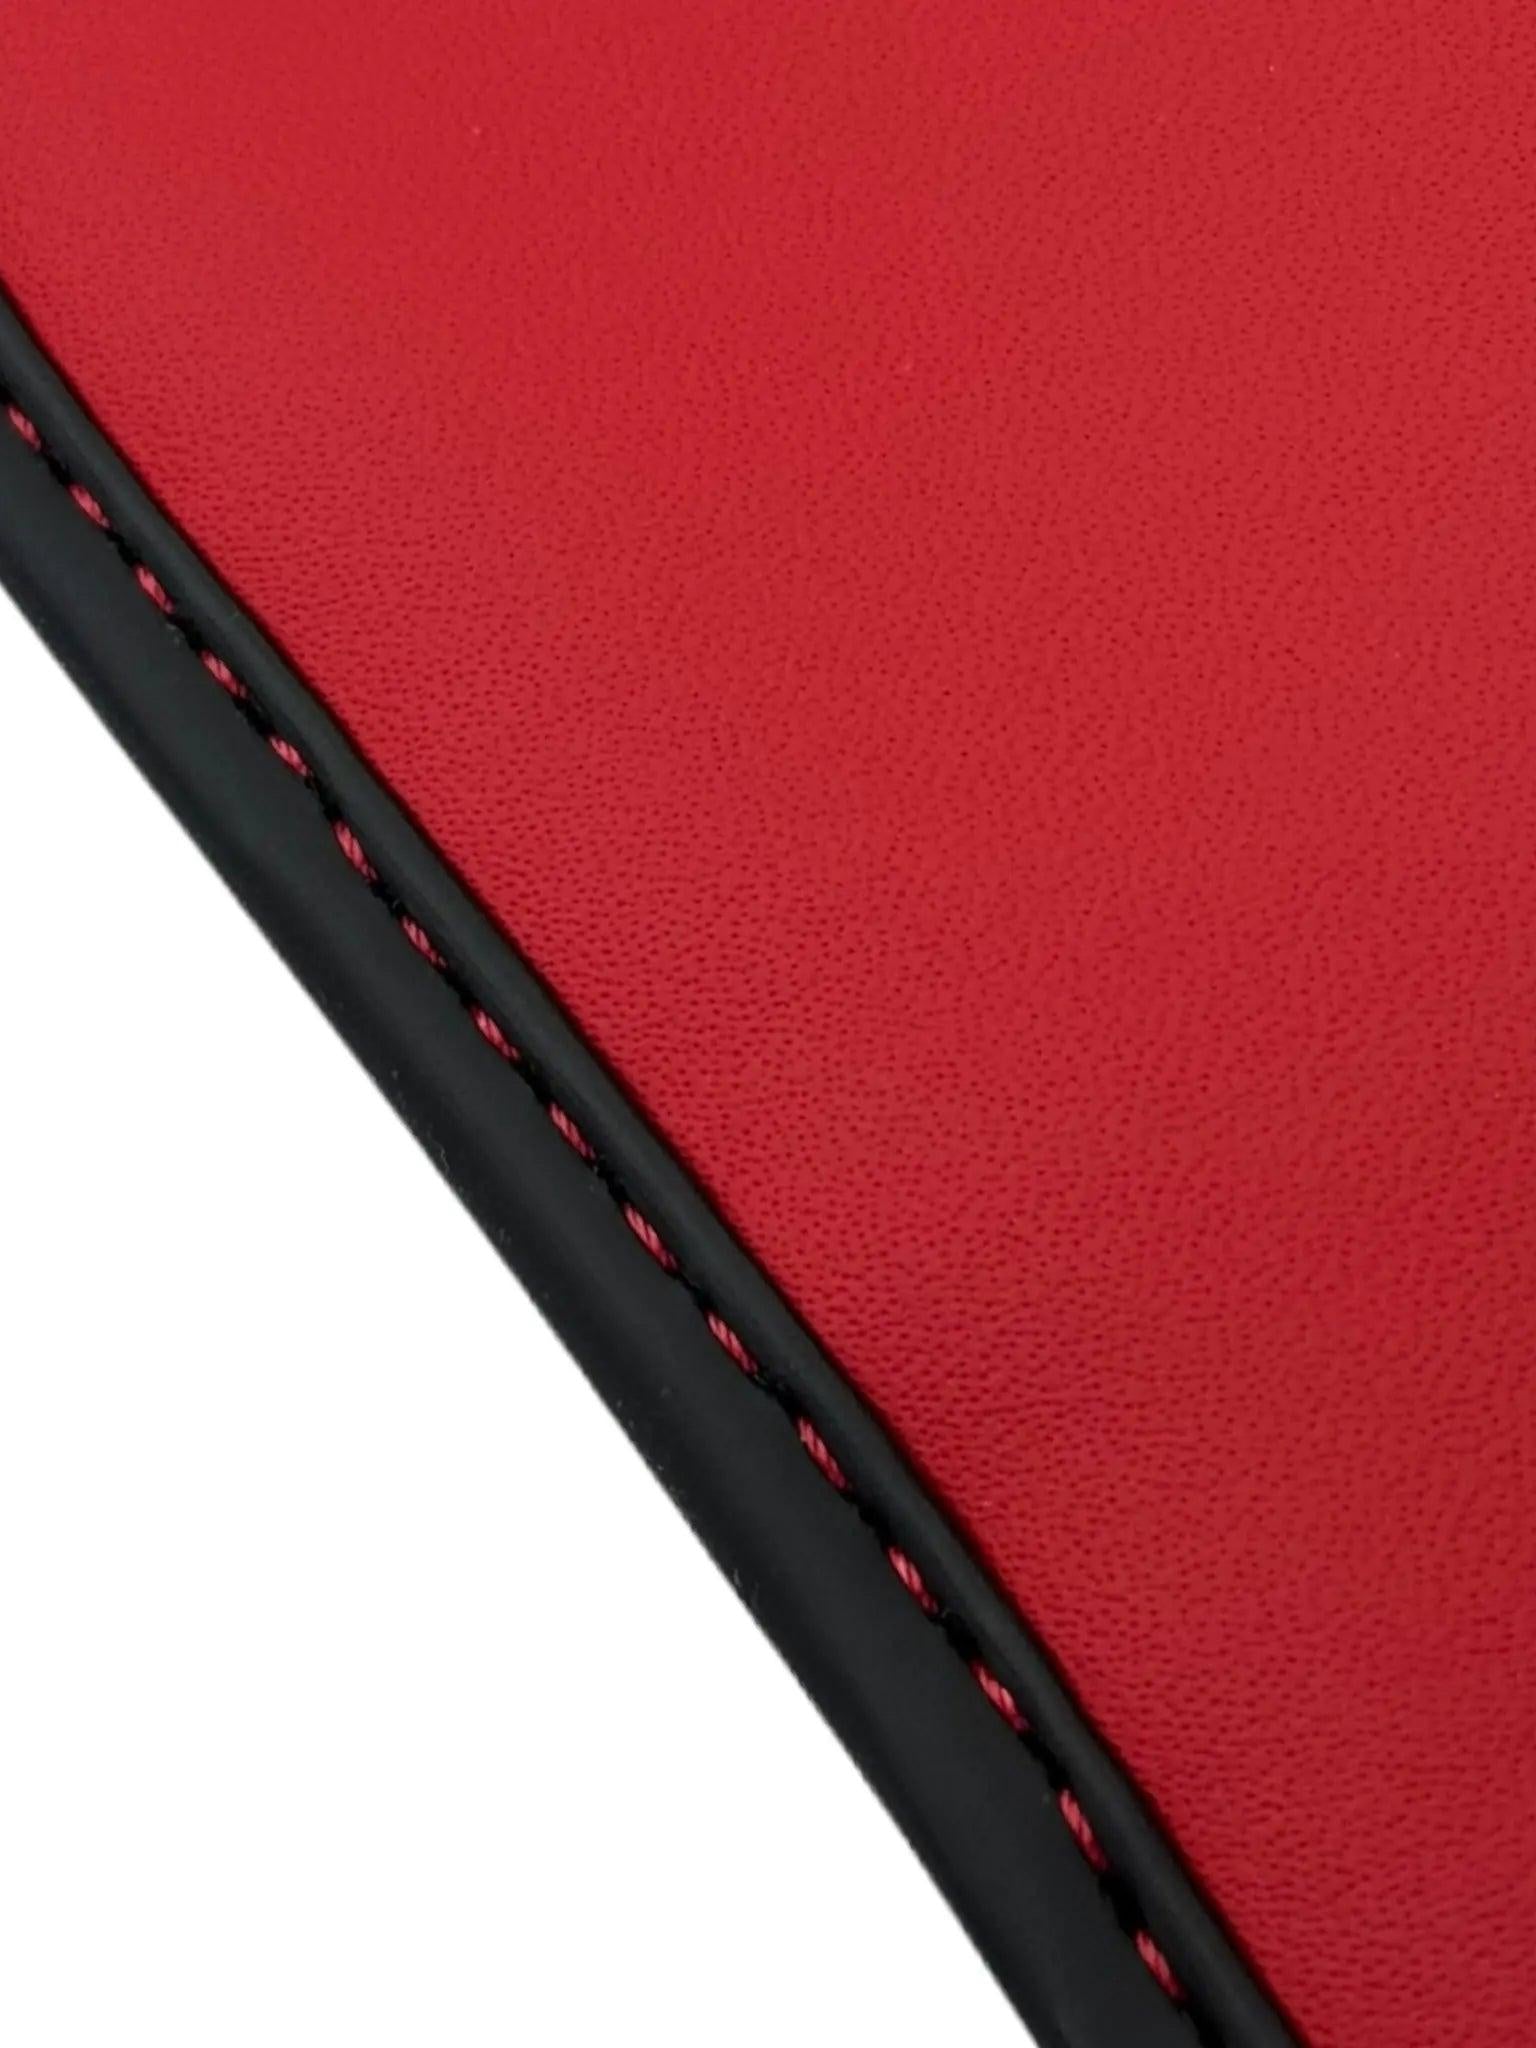 Black Floor Mats for Lamborghini Urus with Red Leather | ER56 Design